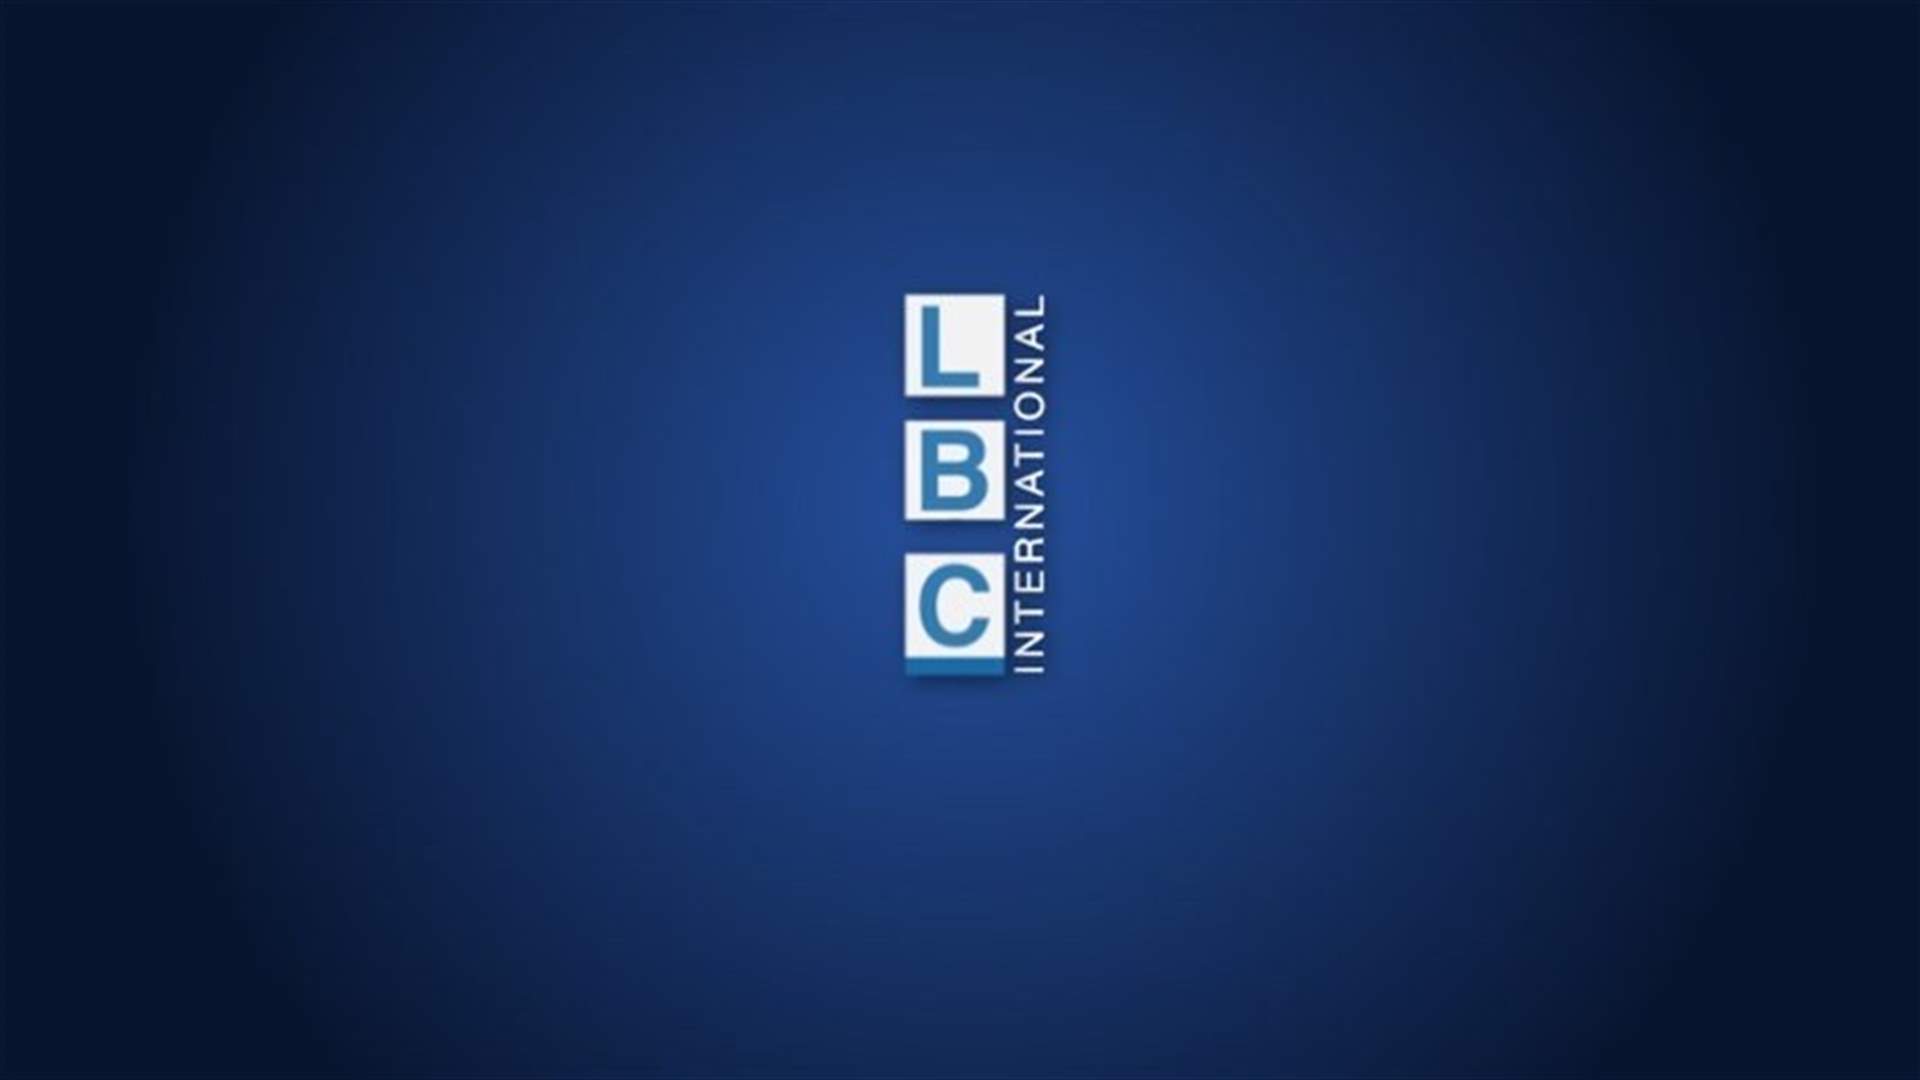 Social distancing prompts new LBCI logo